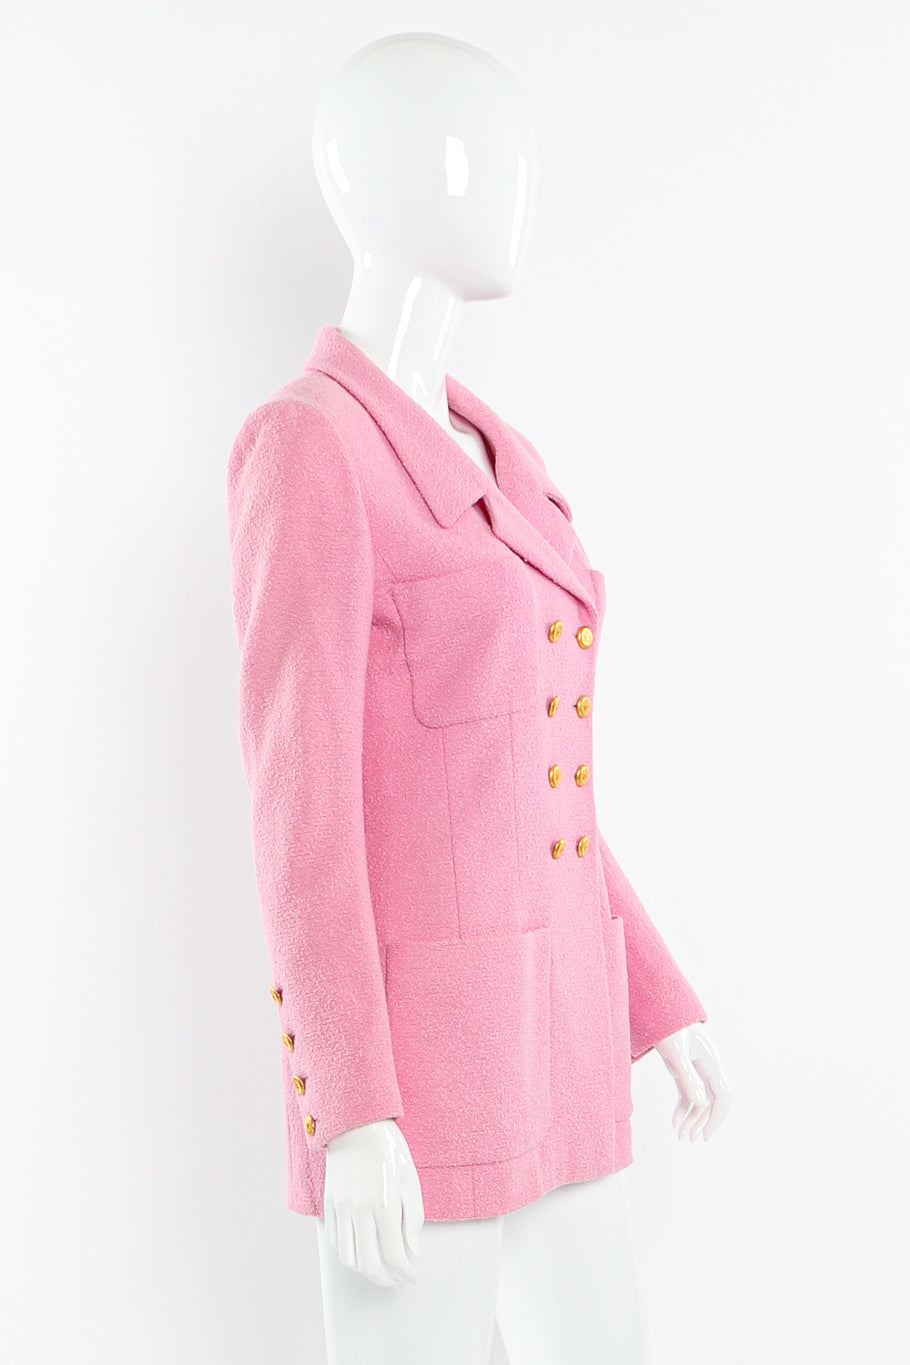 Bouclé knit longline jacket by Chanel on mannequin side @recessla